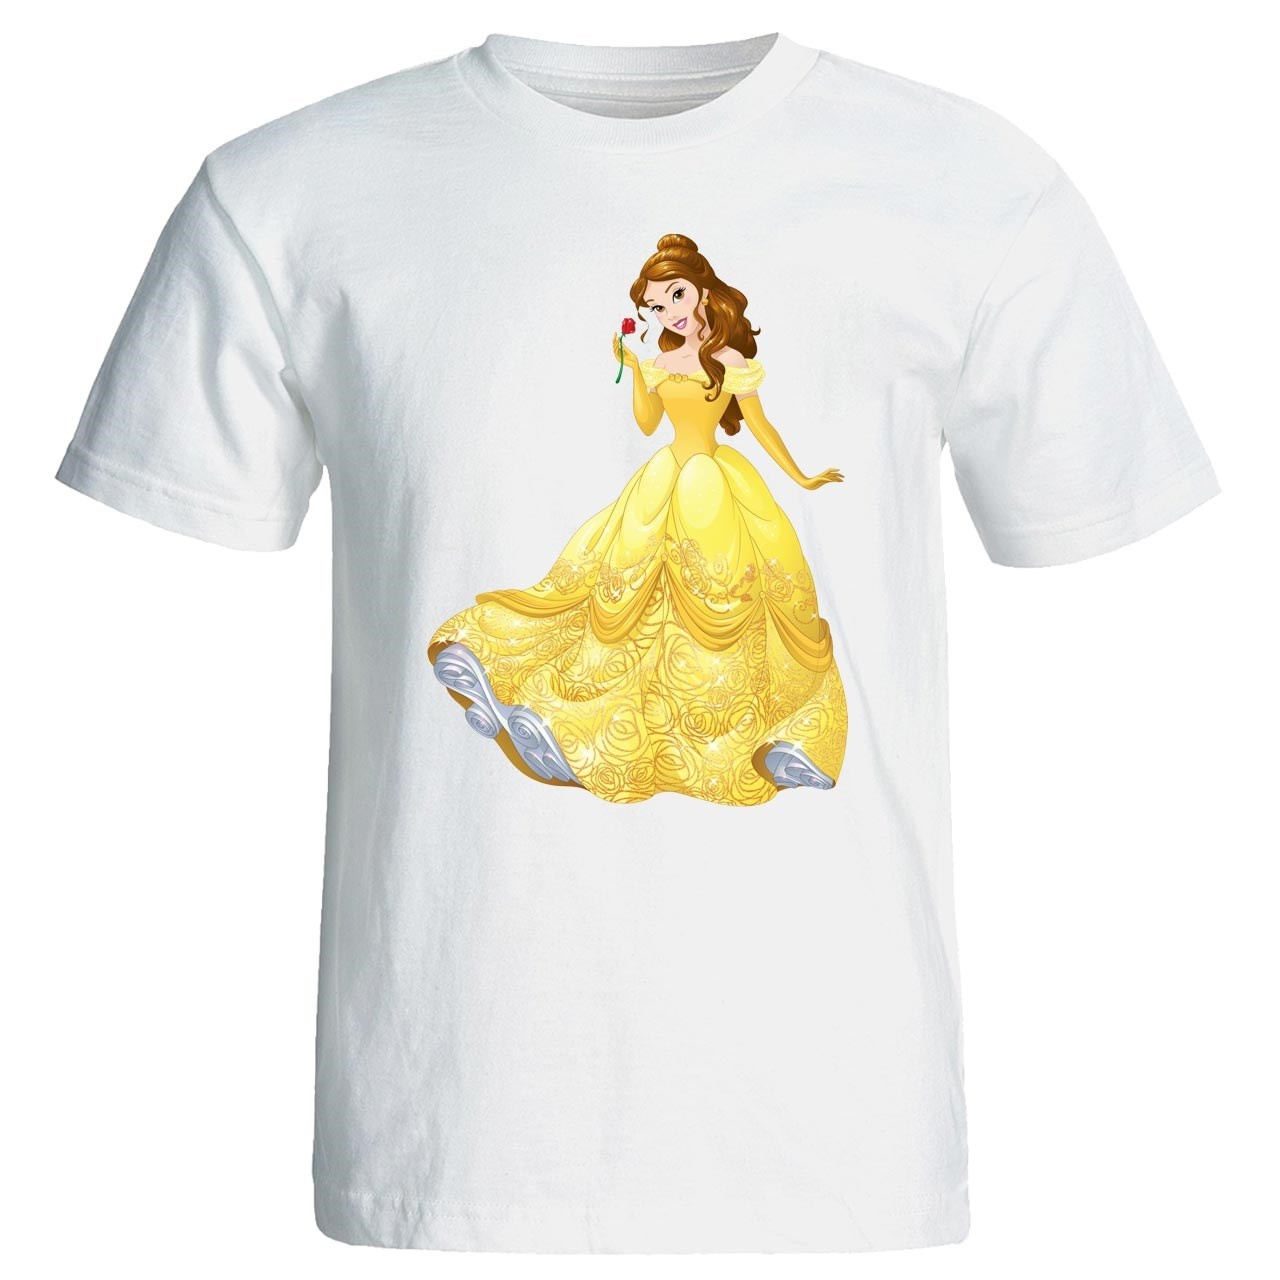 تی شرت پارس طرح کارتونی پرنسس یاسمن کد 3645